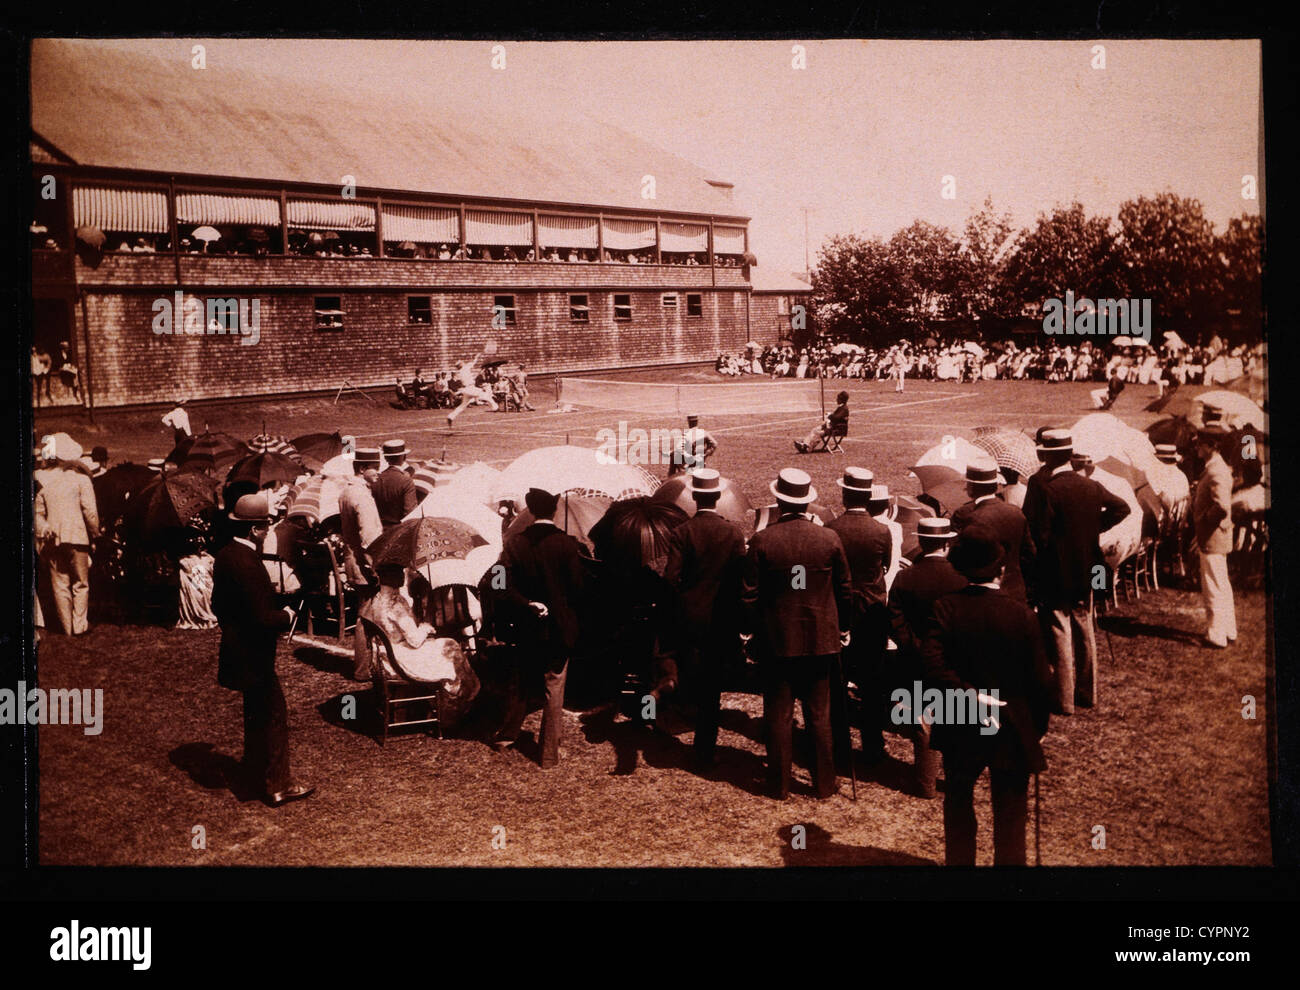 Torneo de Tenis de césped, Newport Casino en Newport, Rhode Island, EE.UU., 1890 Foto de stock